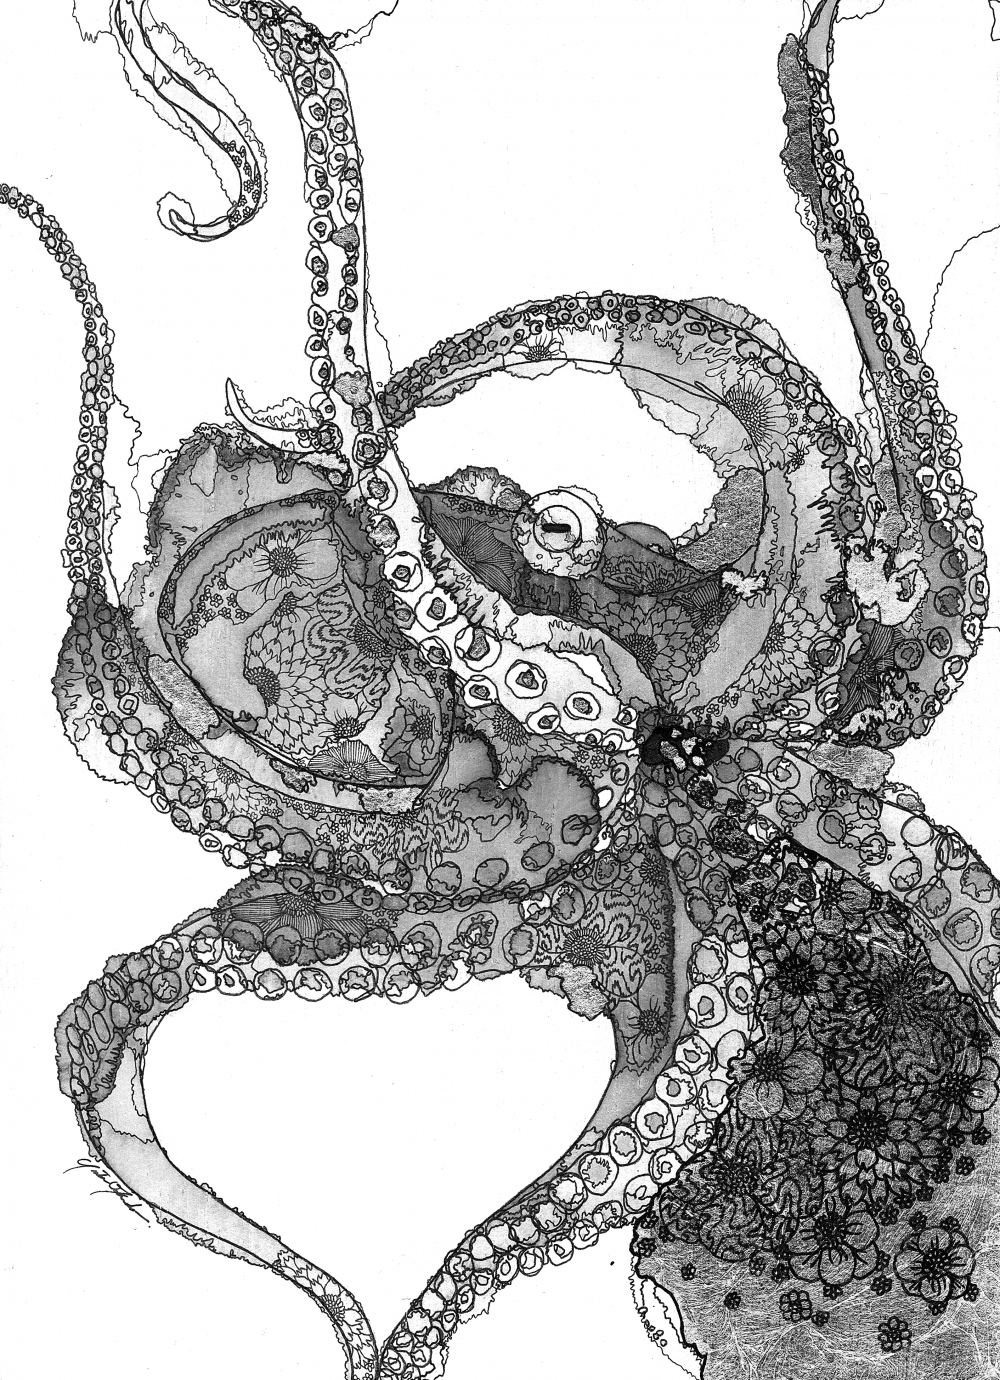 yutaokuda/Abstract Octopus/exid452wid435